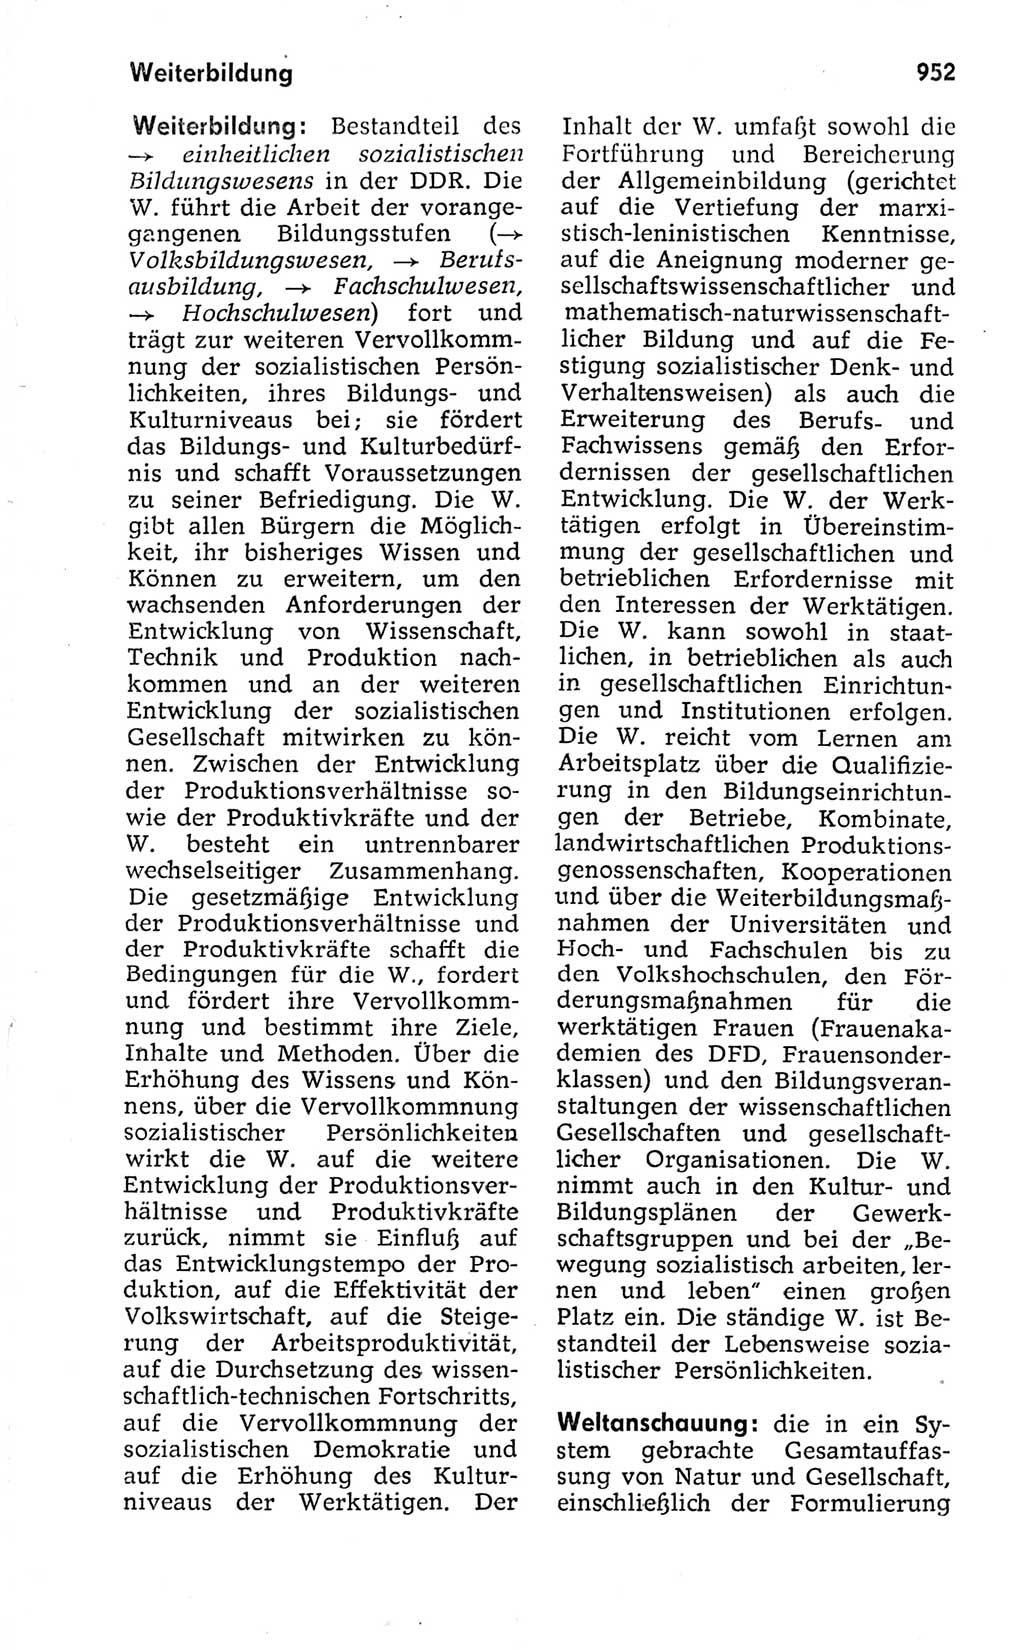 Kleines politisches Wörterbuch [Deutsche Demokratische Republik (DDR)] 1973, Seite 952 (Kl. pol. Wb. DDR 1973, S. 952)